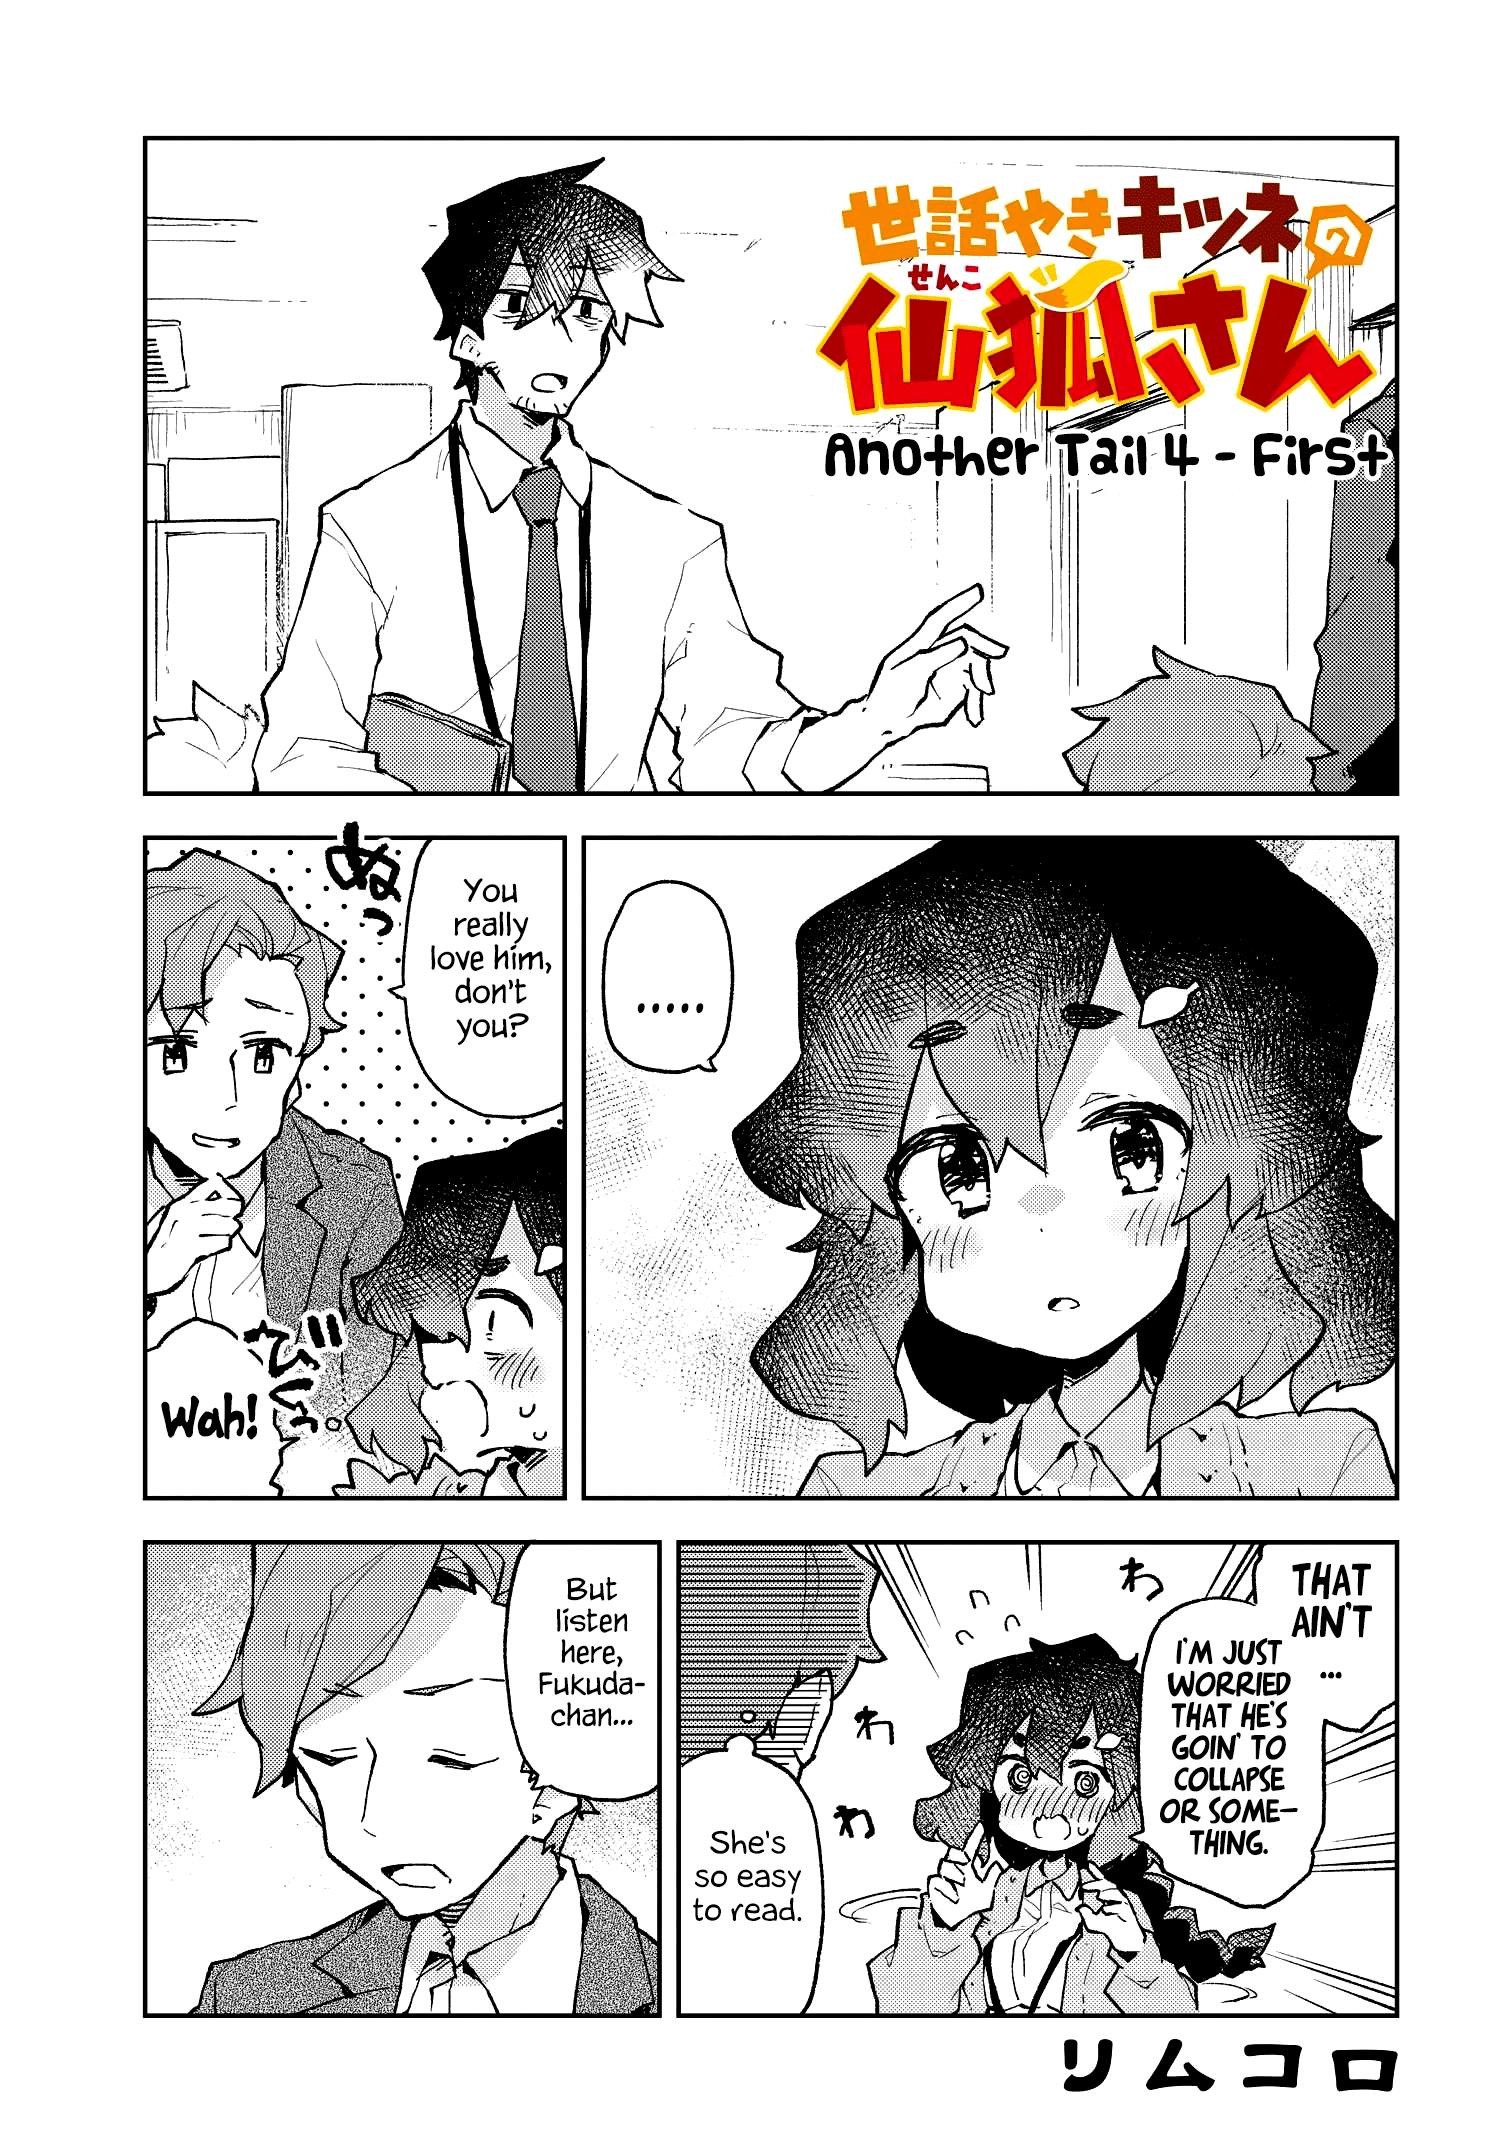 Sewayaki Kitsune No Senko-San Chapter 54: Another Tail 4 page 1 - Mangakakalot